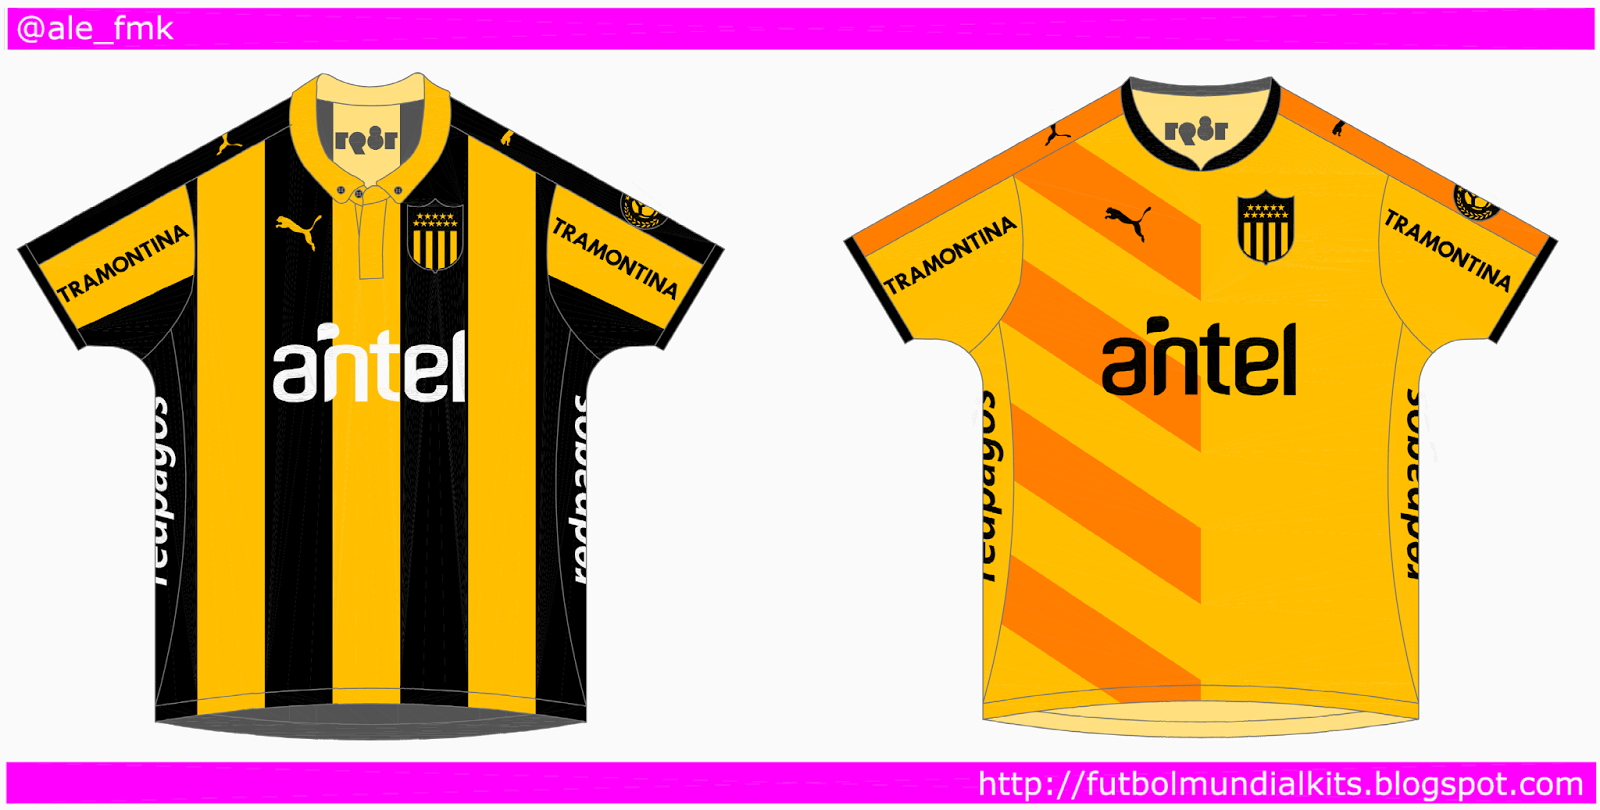 Refinamiento Pedicab Registro Fútbol Mundial Kits - Uruguay: C. A. Peñarol - 2015/2016 (home, away y  aniversario)